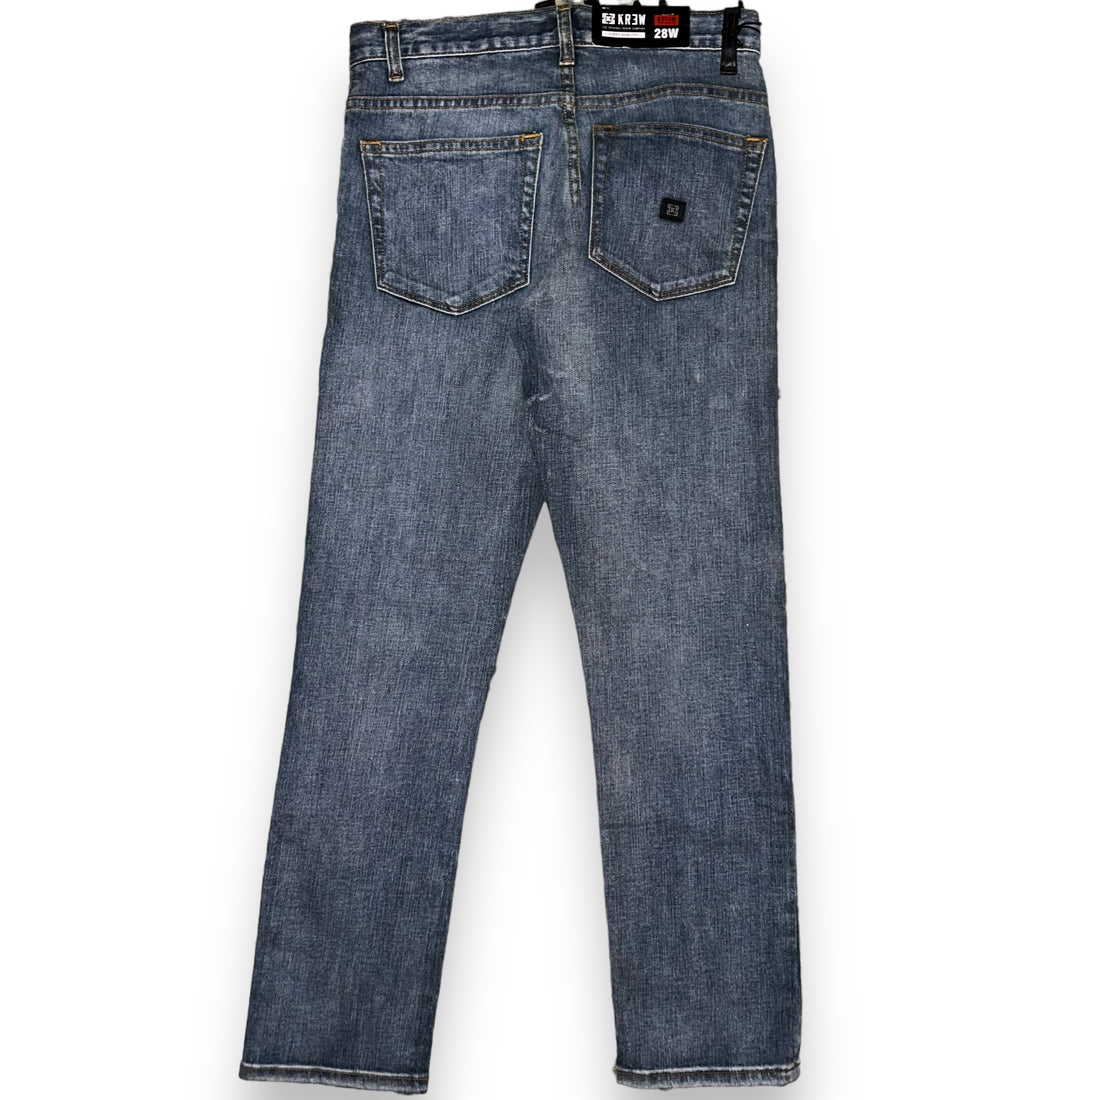 Jeans Krew  (30 USA  S)